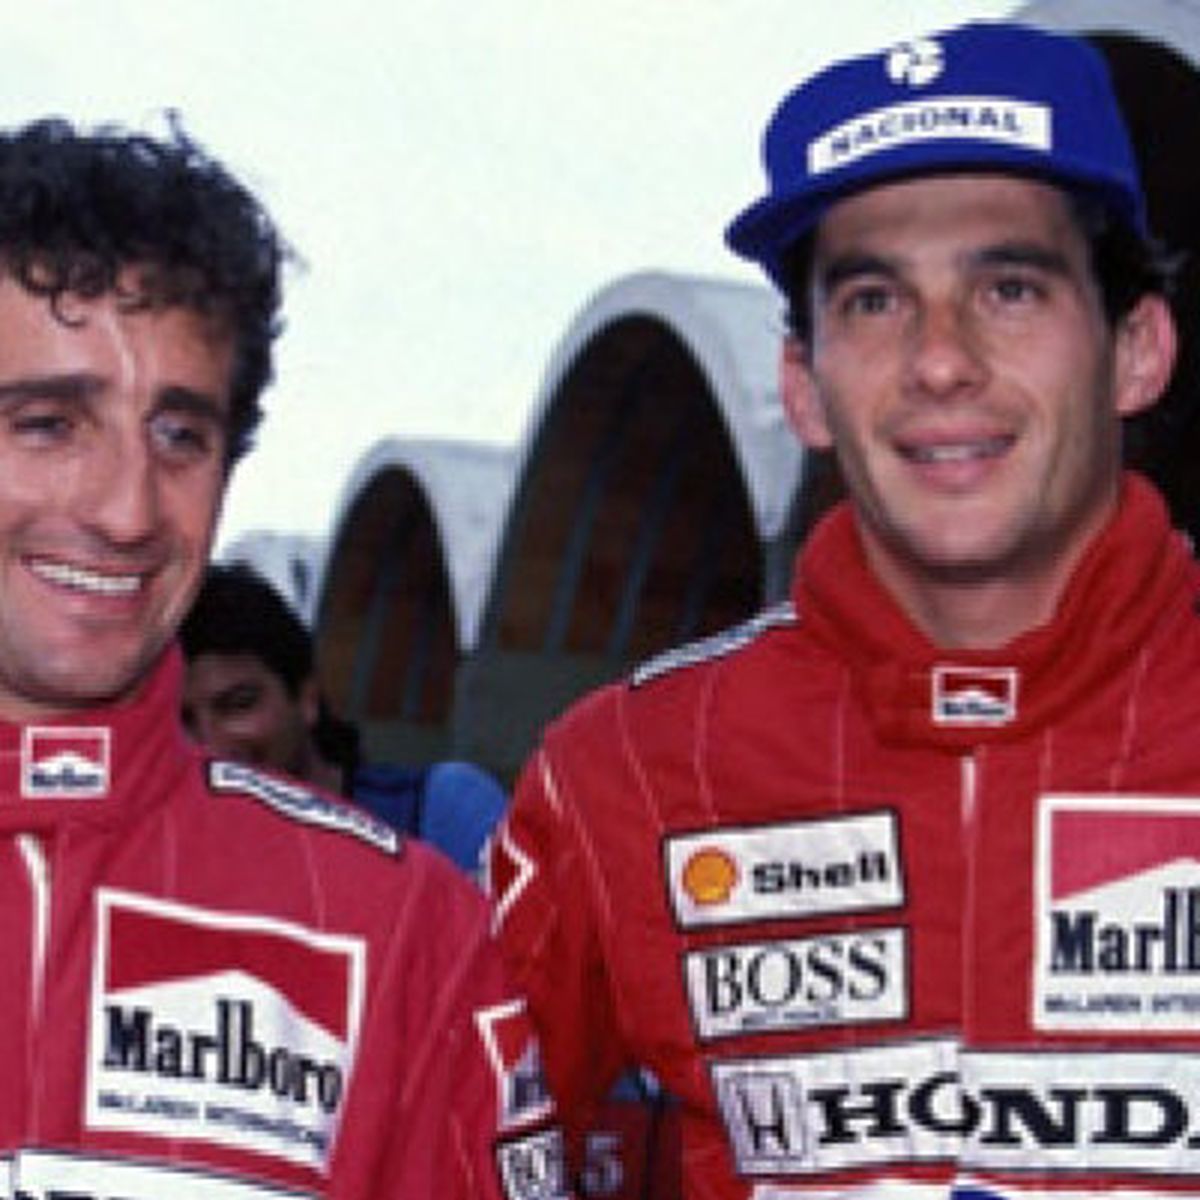 Ayrton Senna, revelados sus orígenes toscanos 